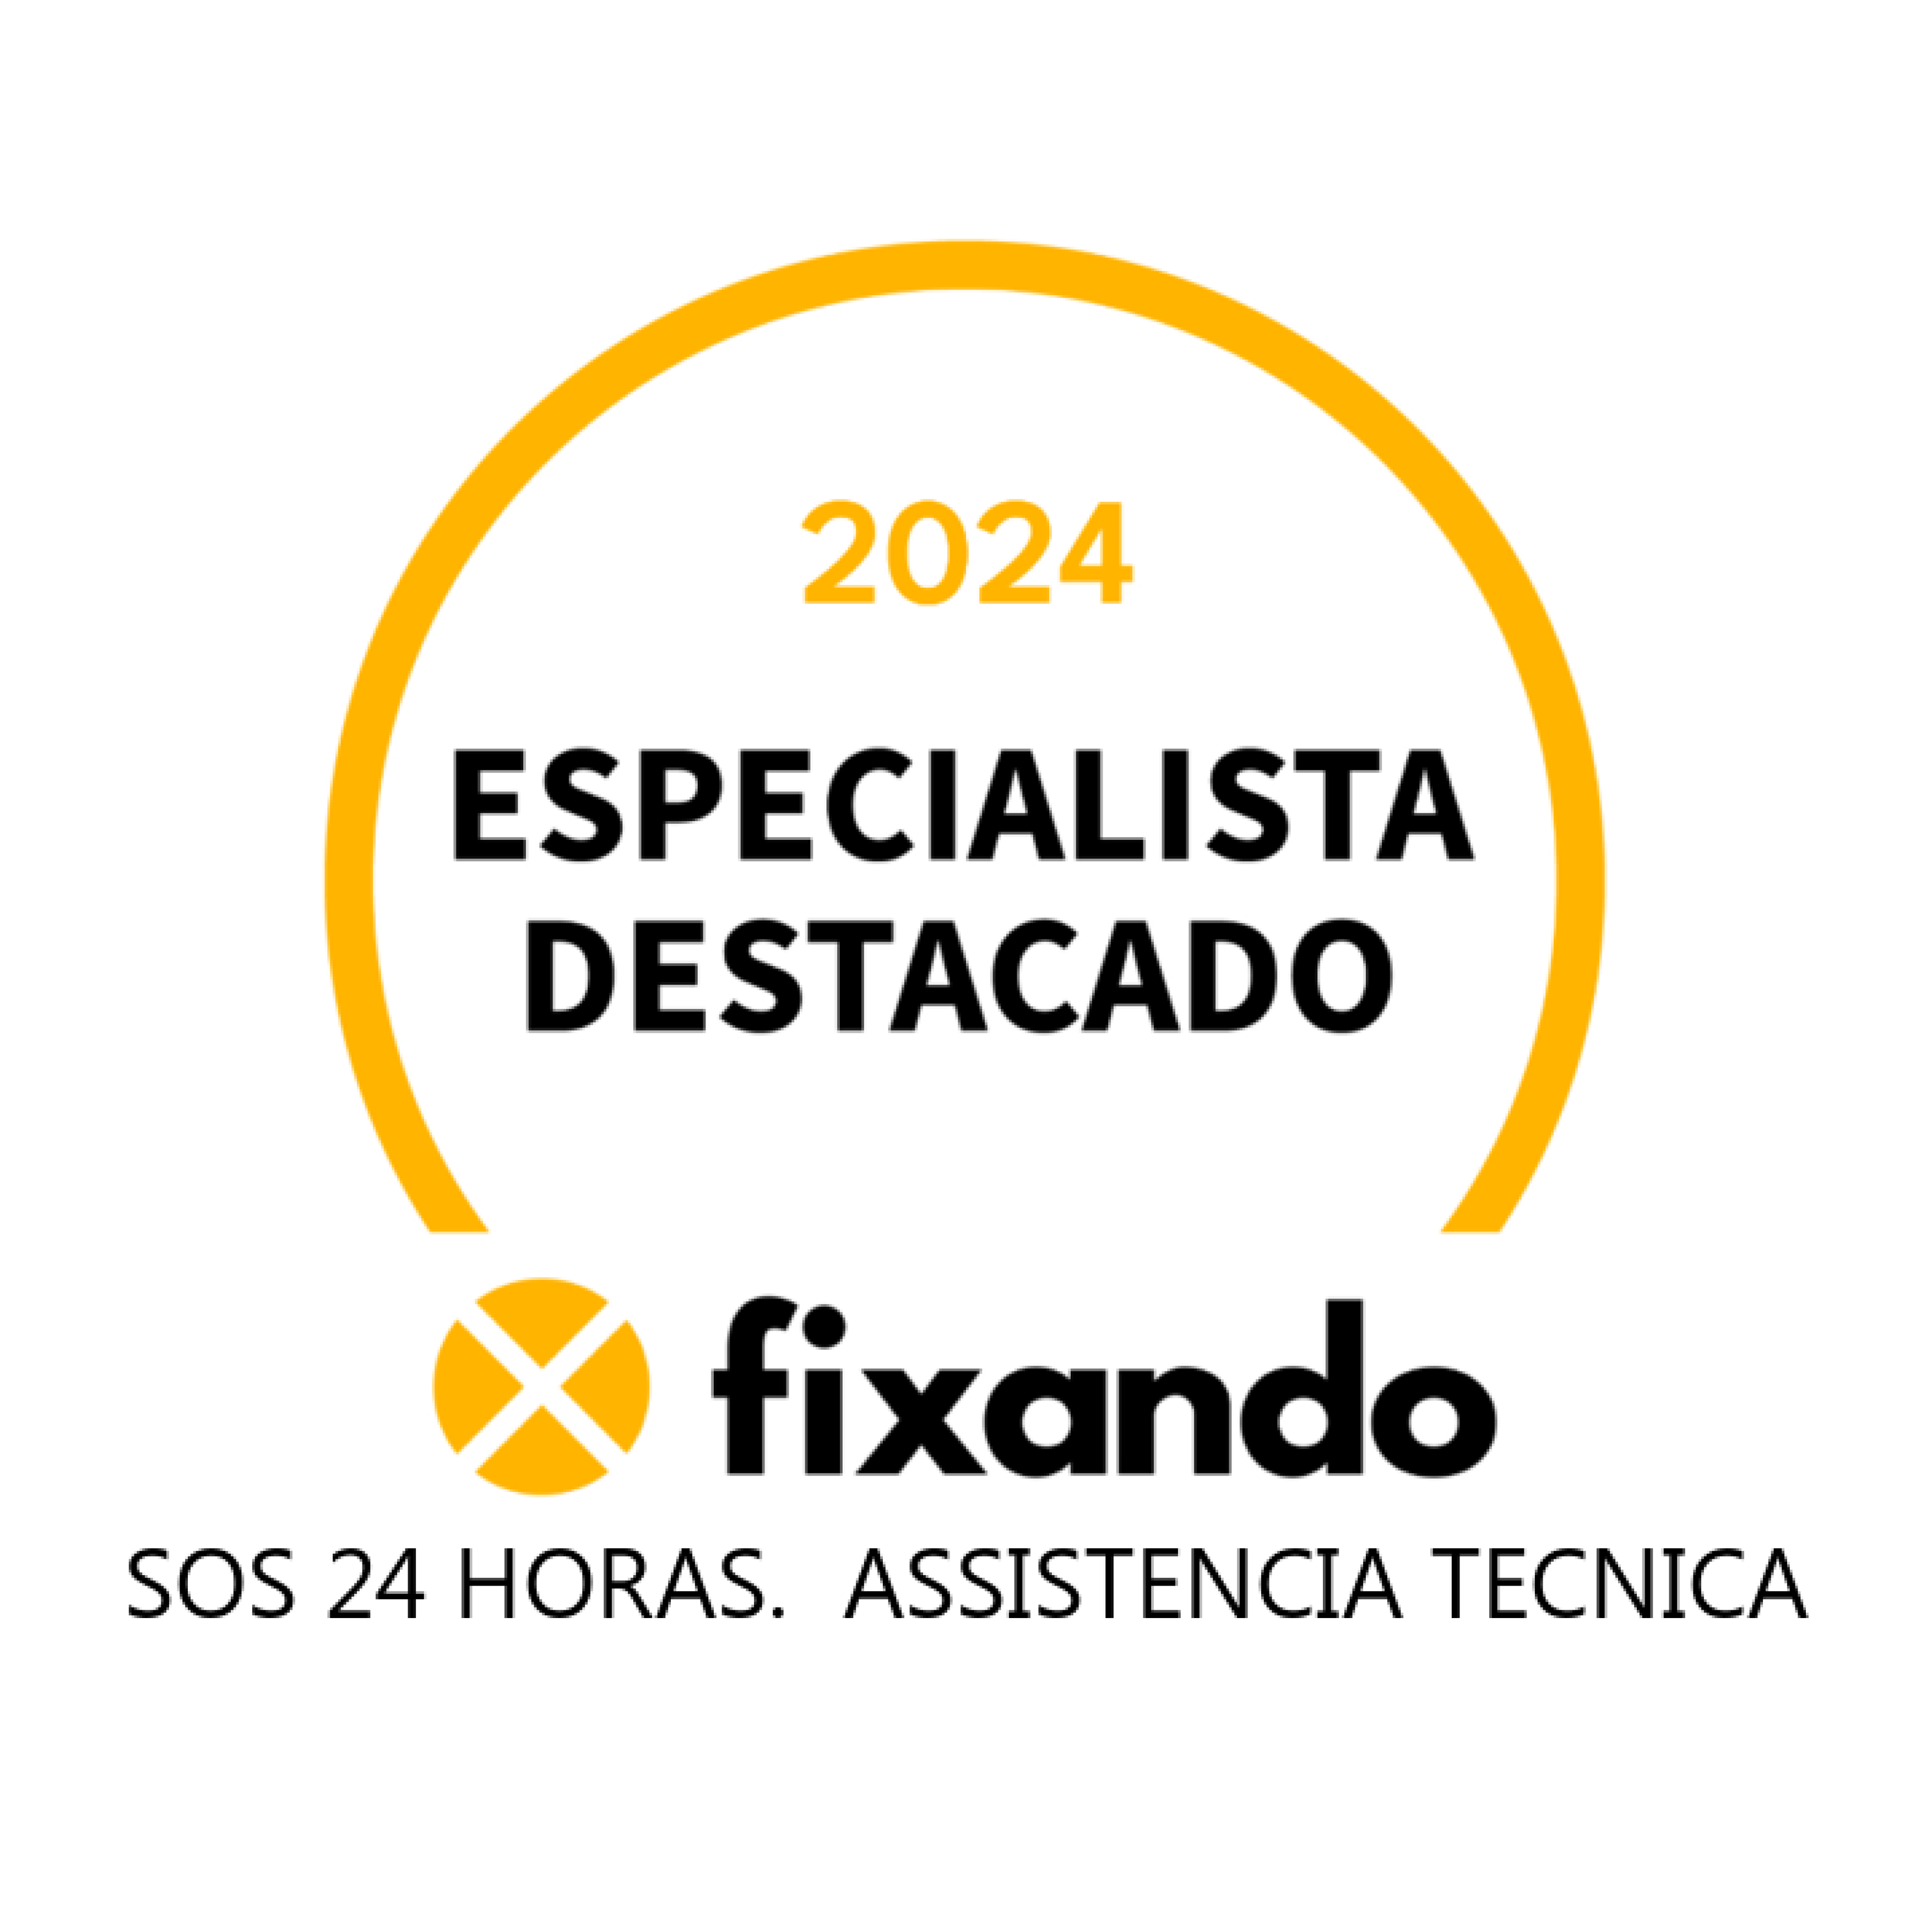 SOS 24 HORAS.  ASSISTENCIA TECNICA - Albufeira - Instalação de Estores